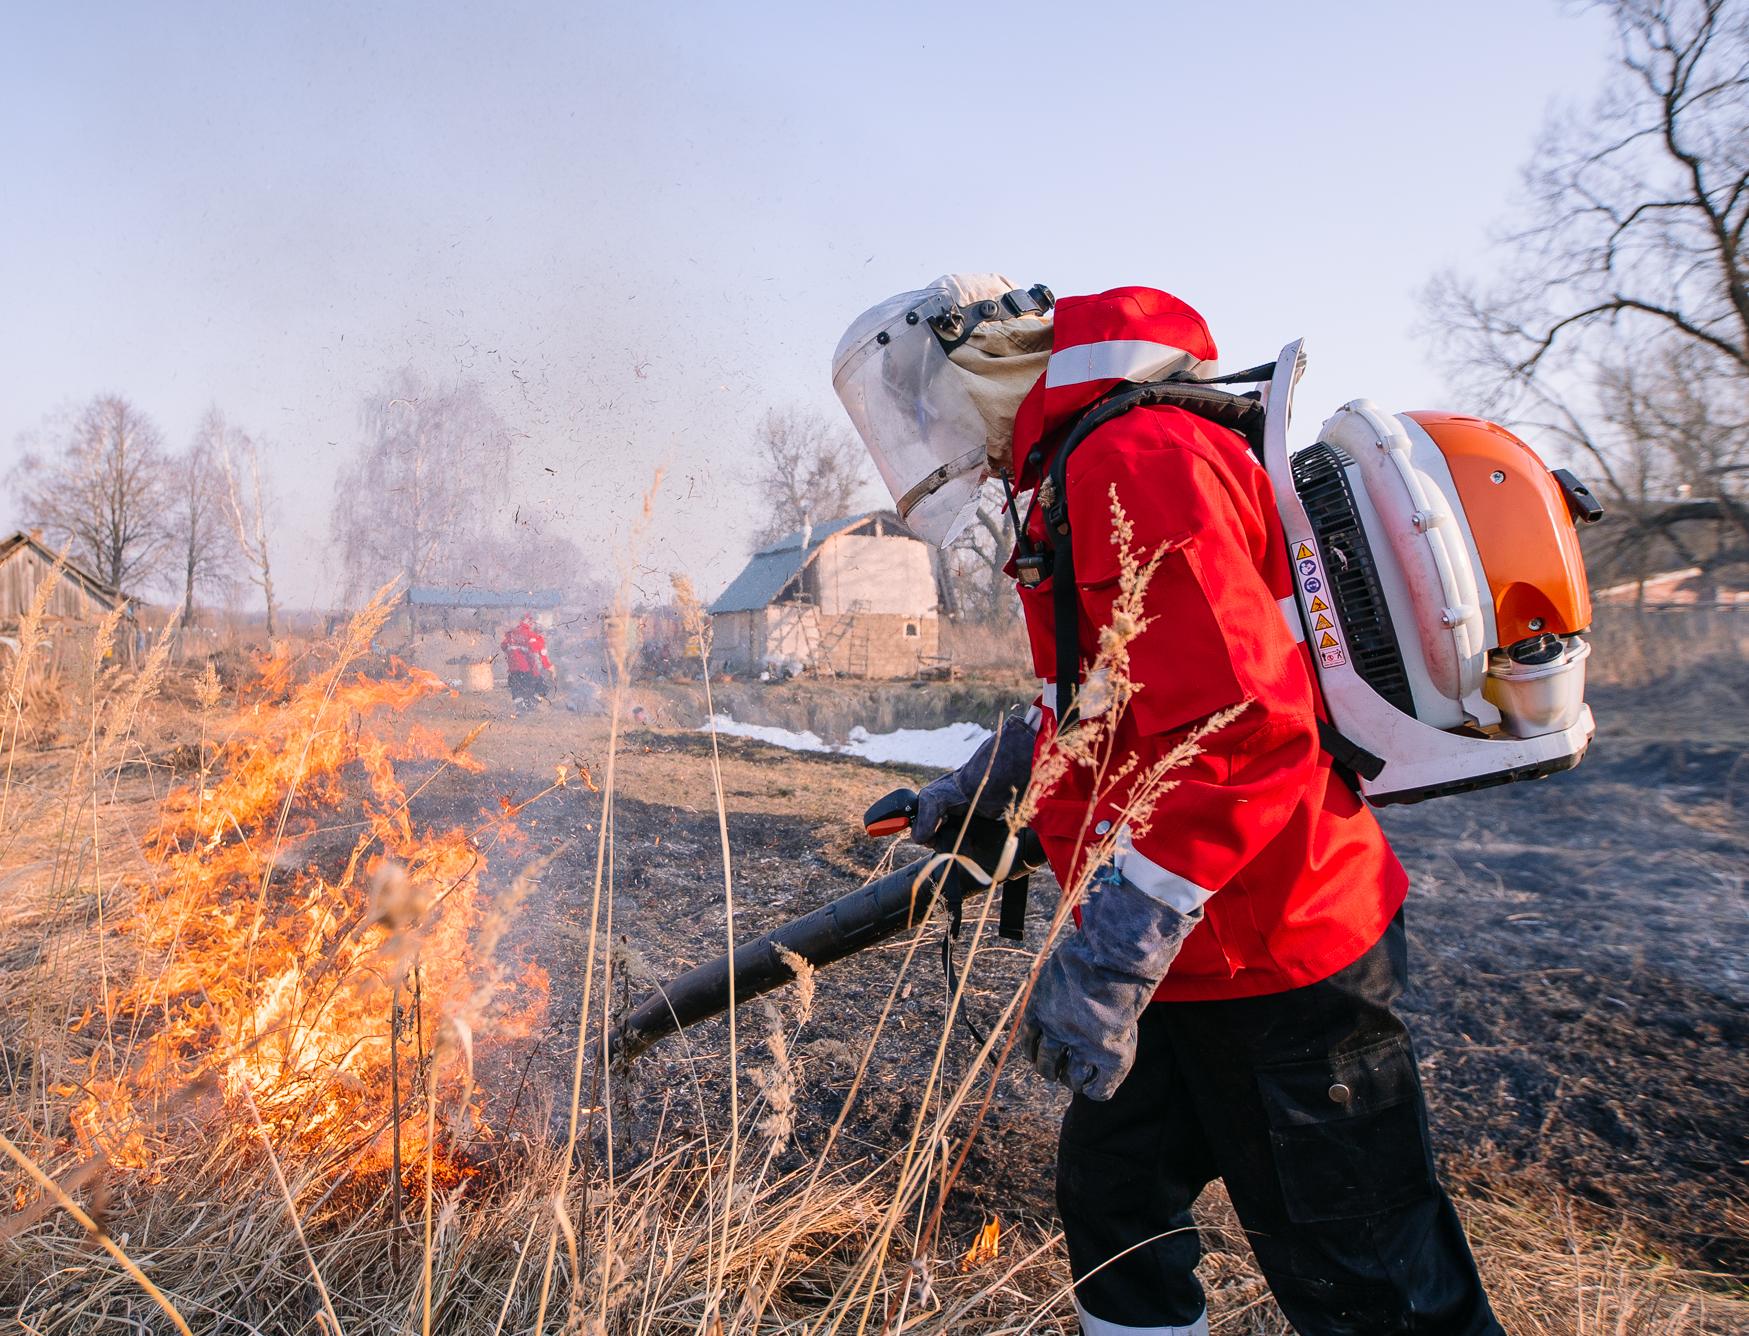 42 лесных пожара на общей площади 7,96 га потушили за сентябрь в Подмосковье